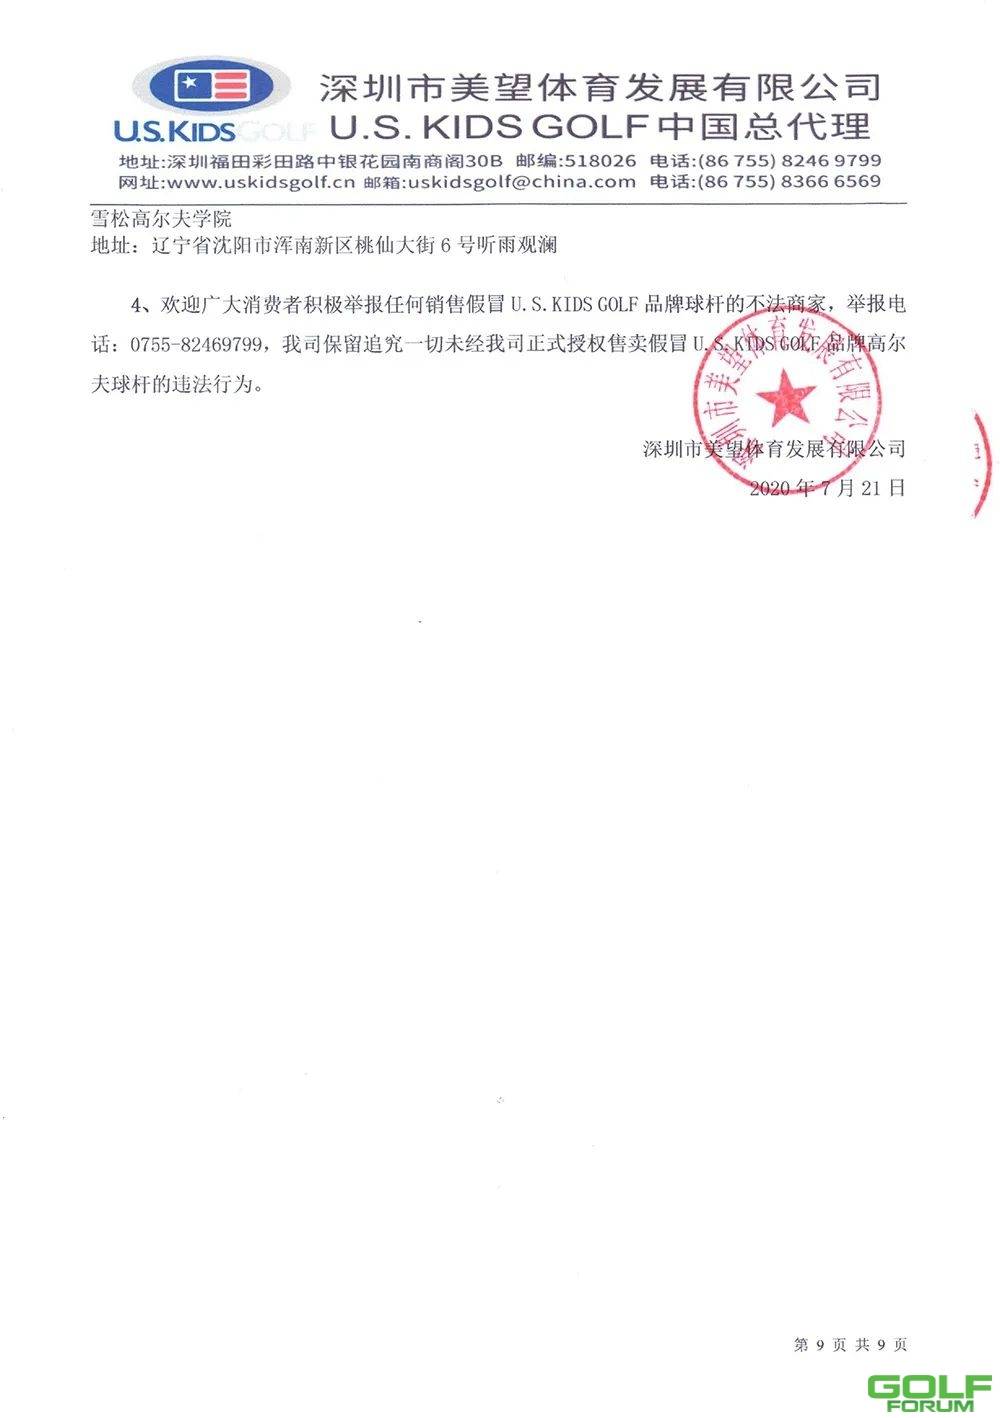 U.S.KIDSGOLF品牌中国总代理官方声明